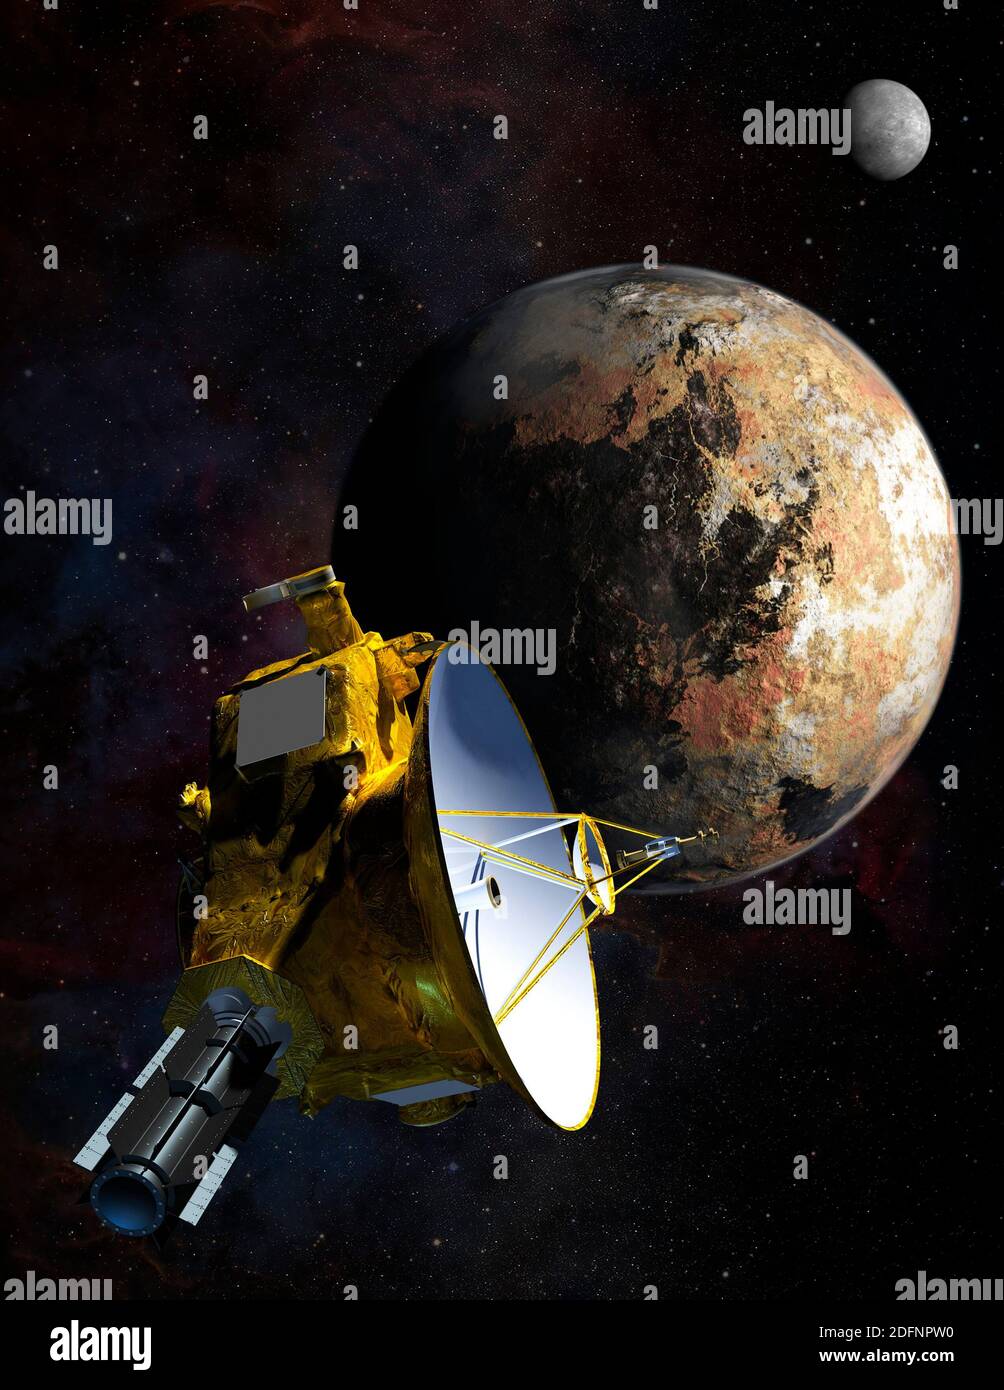 PLUTONE, Sol SYSTEM - 13 luglio 2015 - l'impressione di questo artista dell'oggetto sub-planetario Plutone è stata presa mentre la sonda spaziale si avvicinava al piccolo pianeta Foto Stock